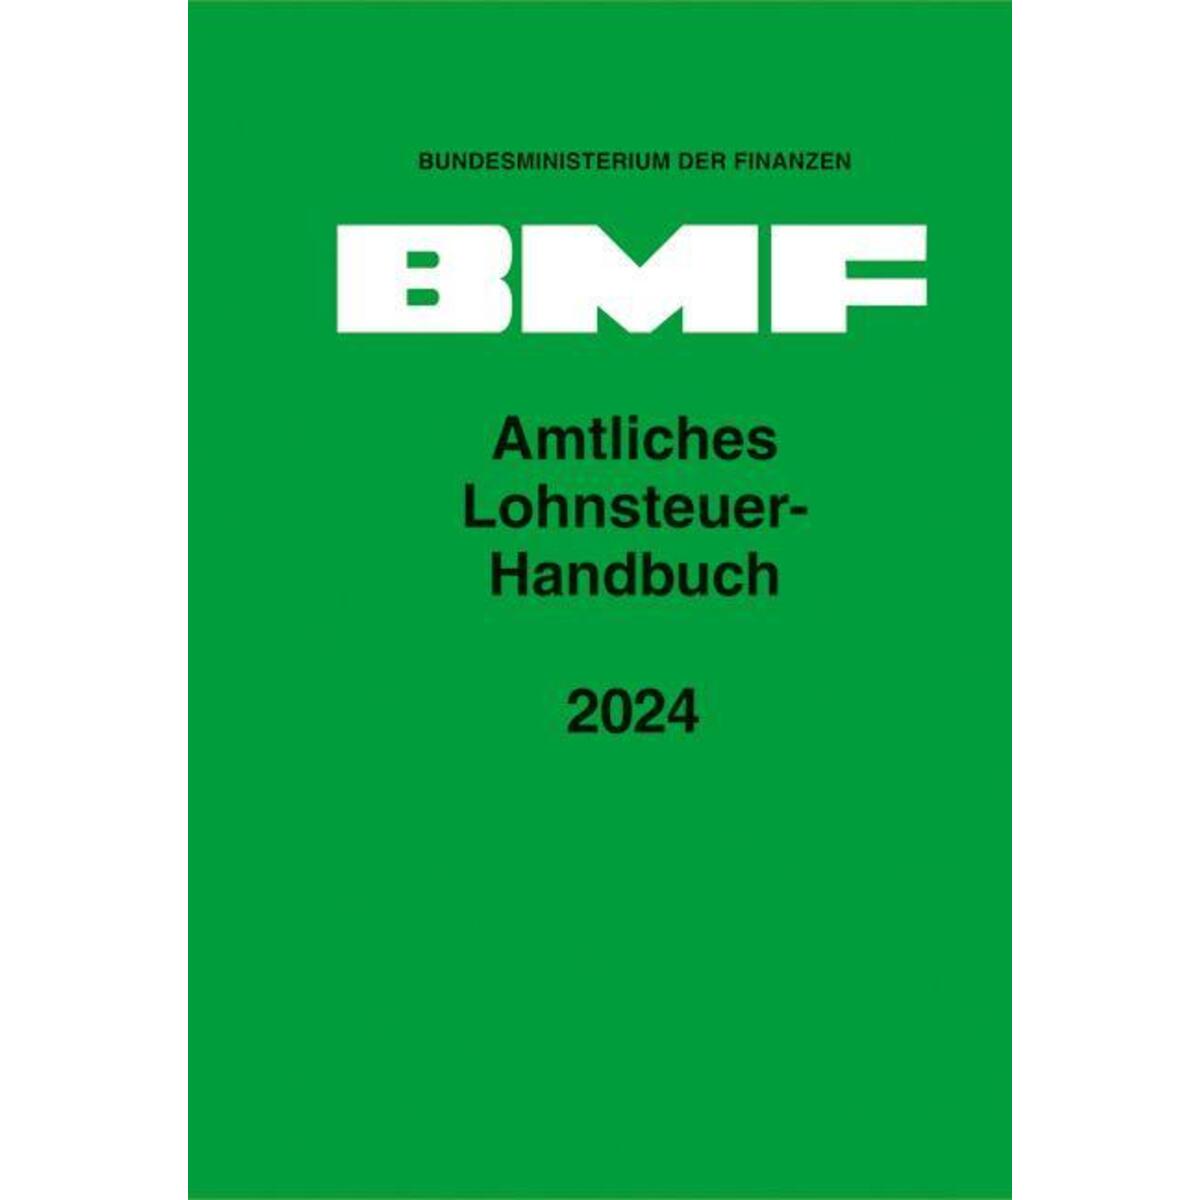 Amtliches Lohnsteuer-Handbuch 2024 von Schmidt, Erich Verlag